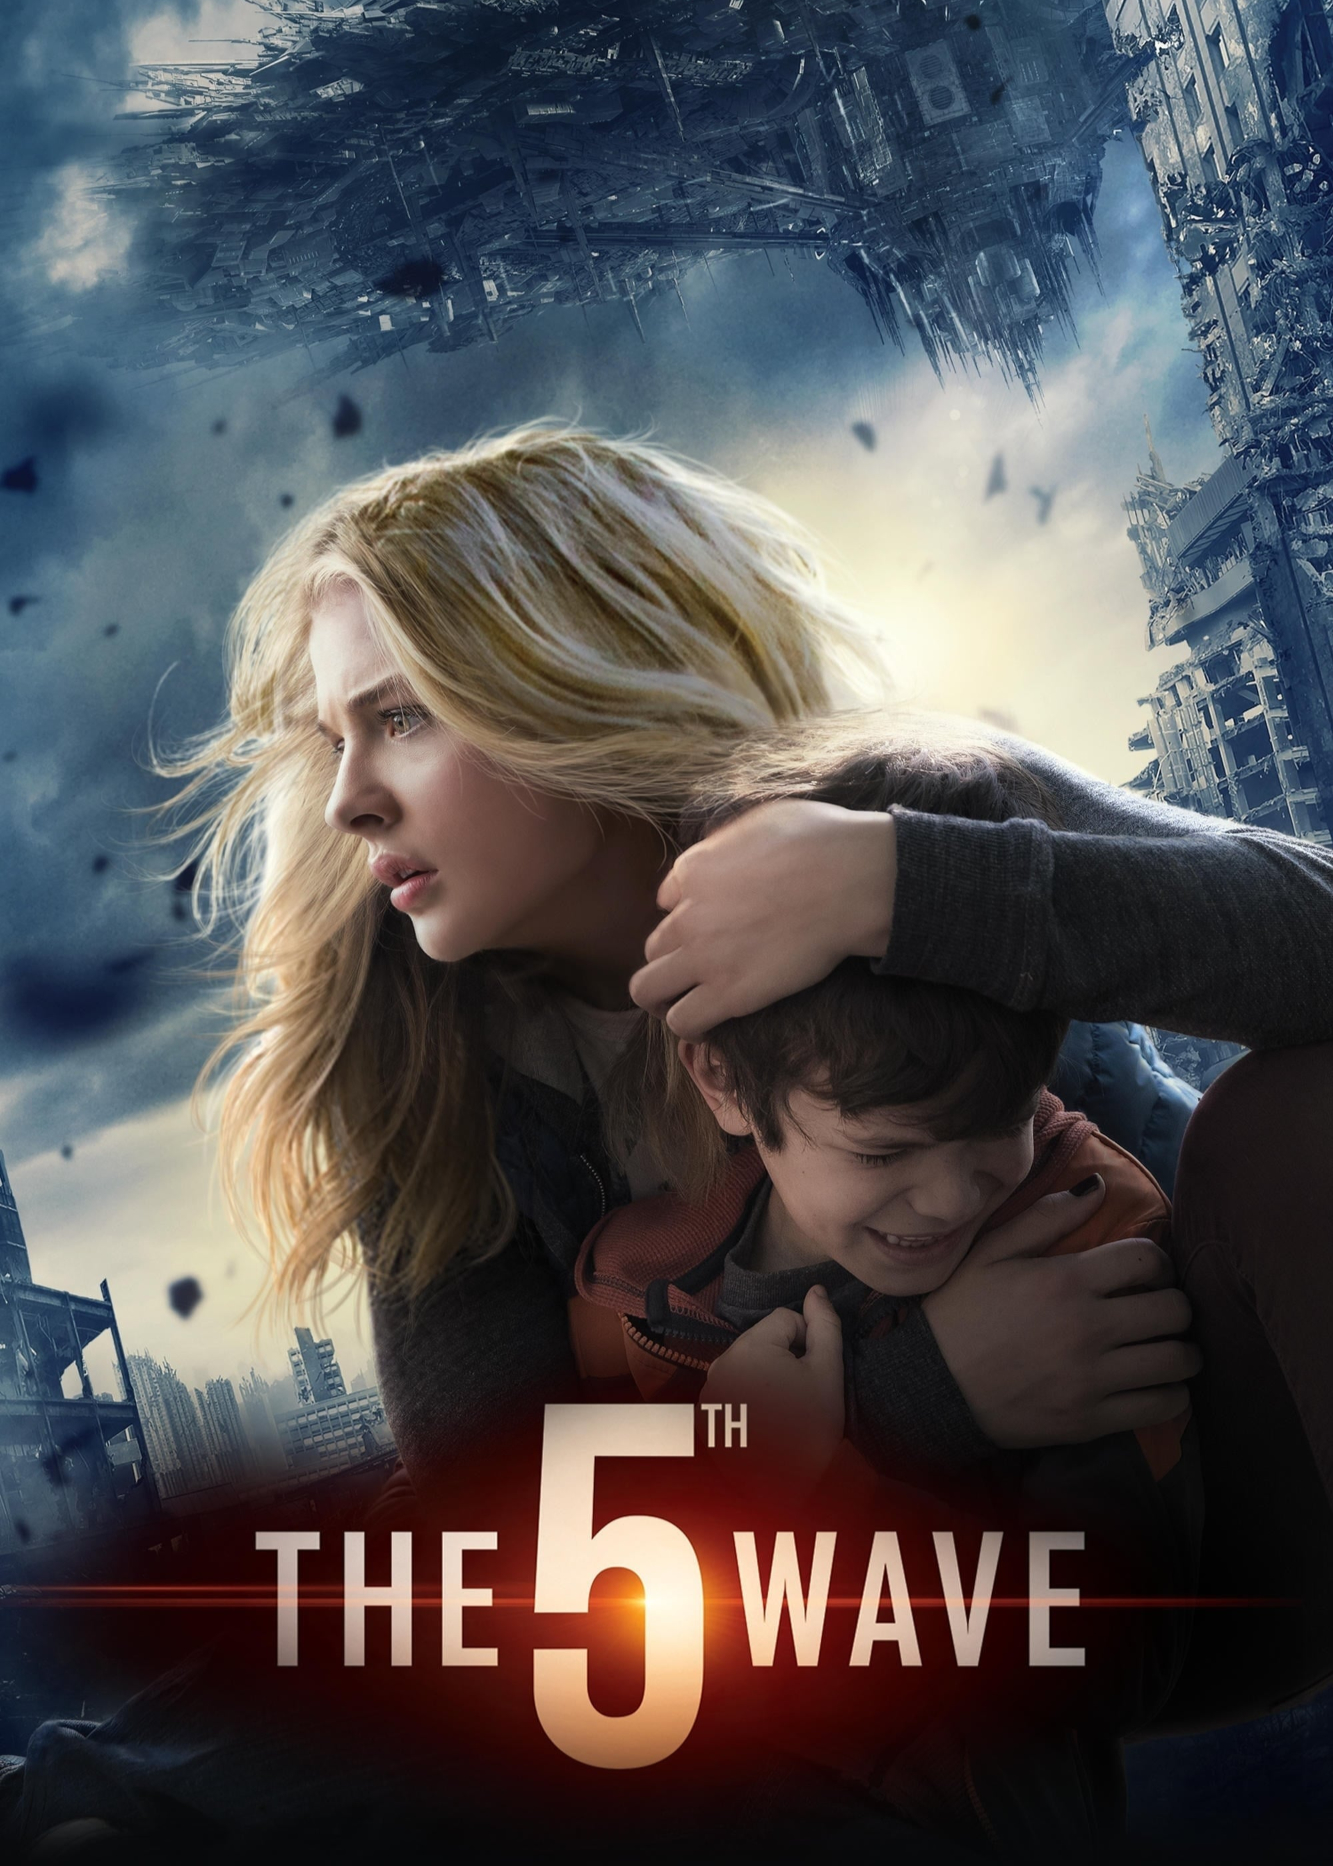 Poster Phim Đợt tấn công thứ 5 (The 5th Wave)